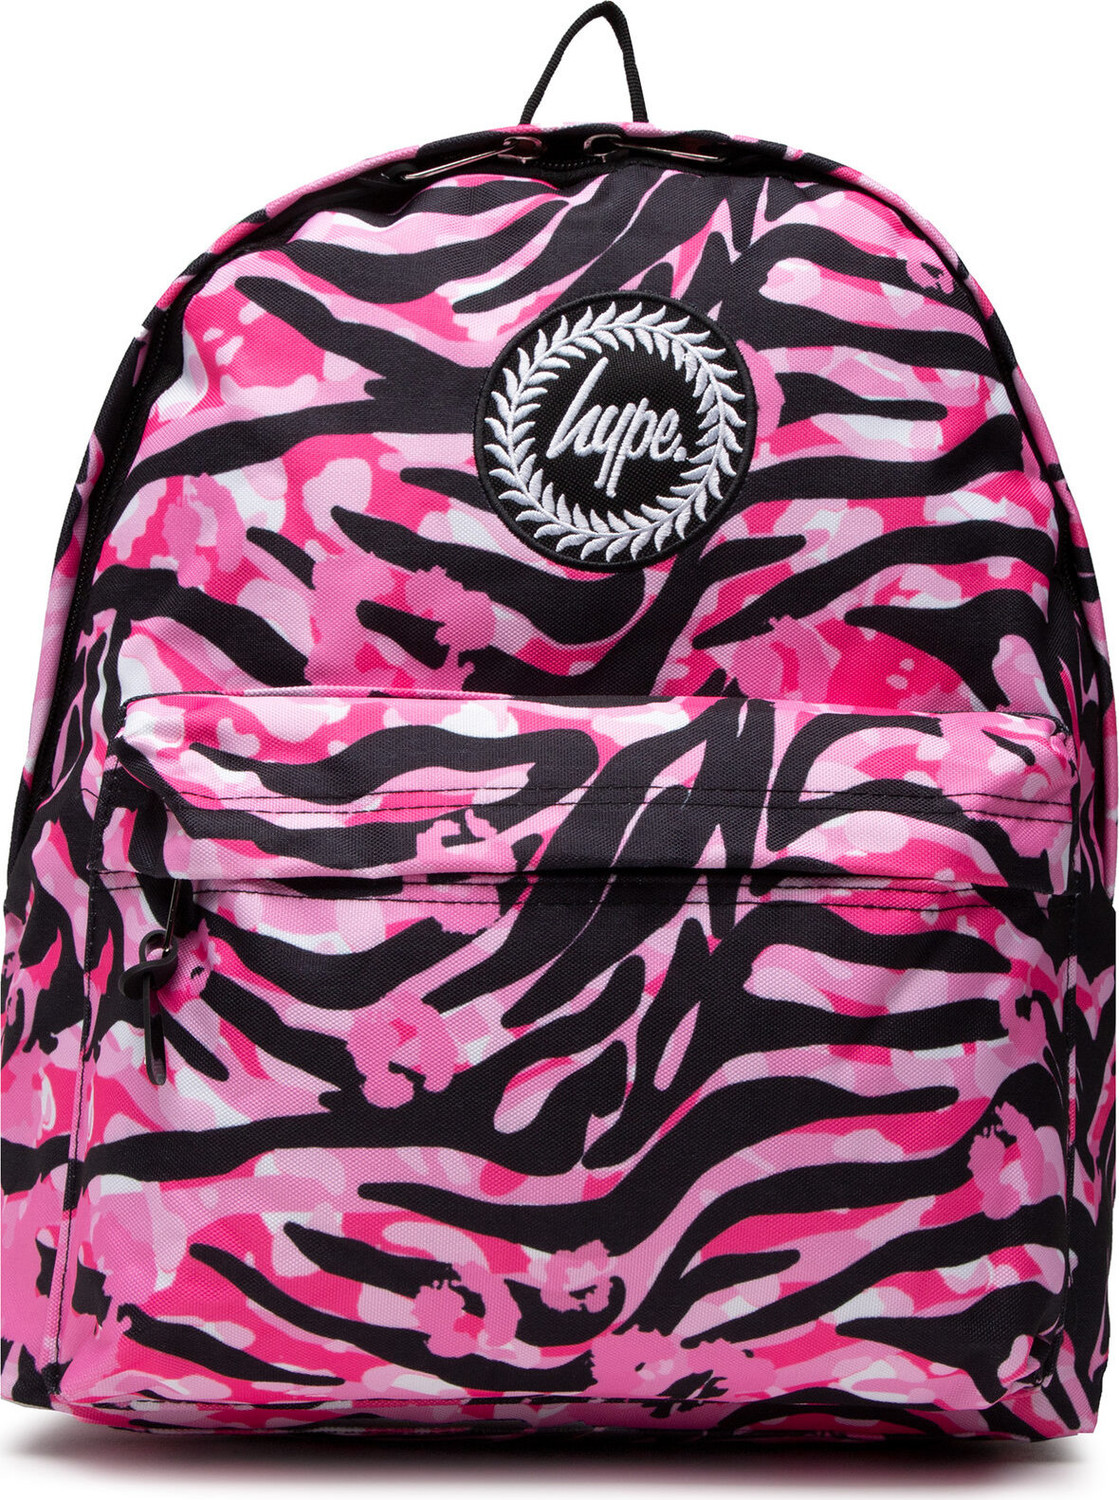 Batoh HYPE Pink Zebra Animal Backpack TWLG-728 Pink